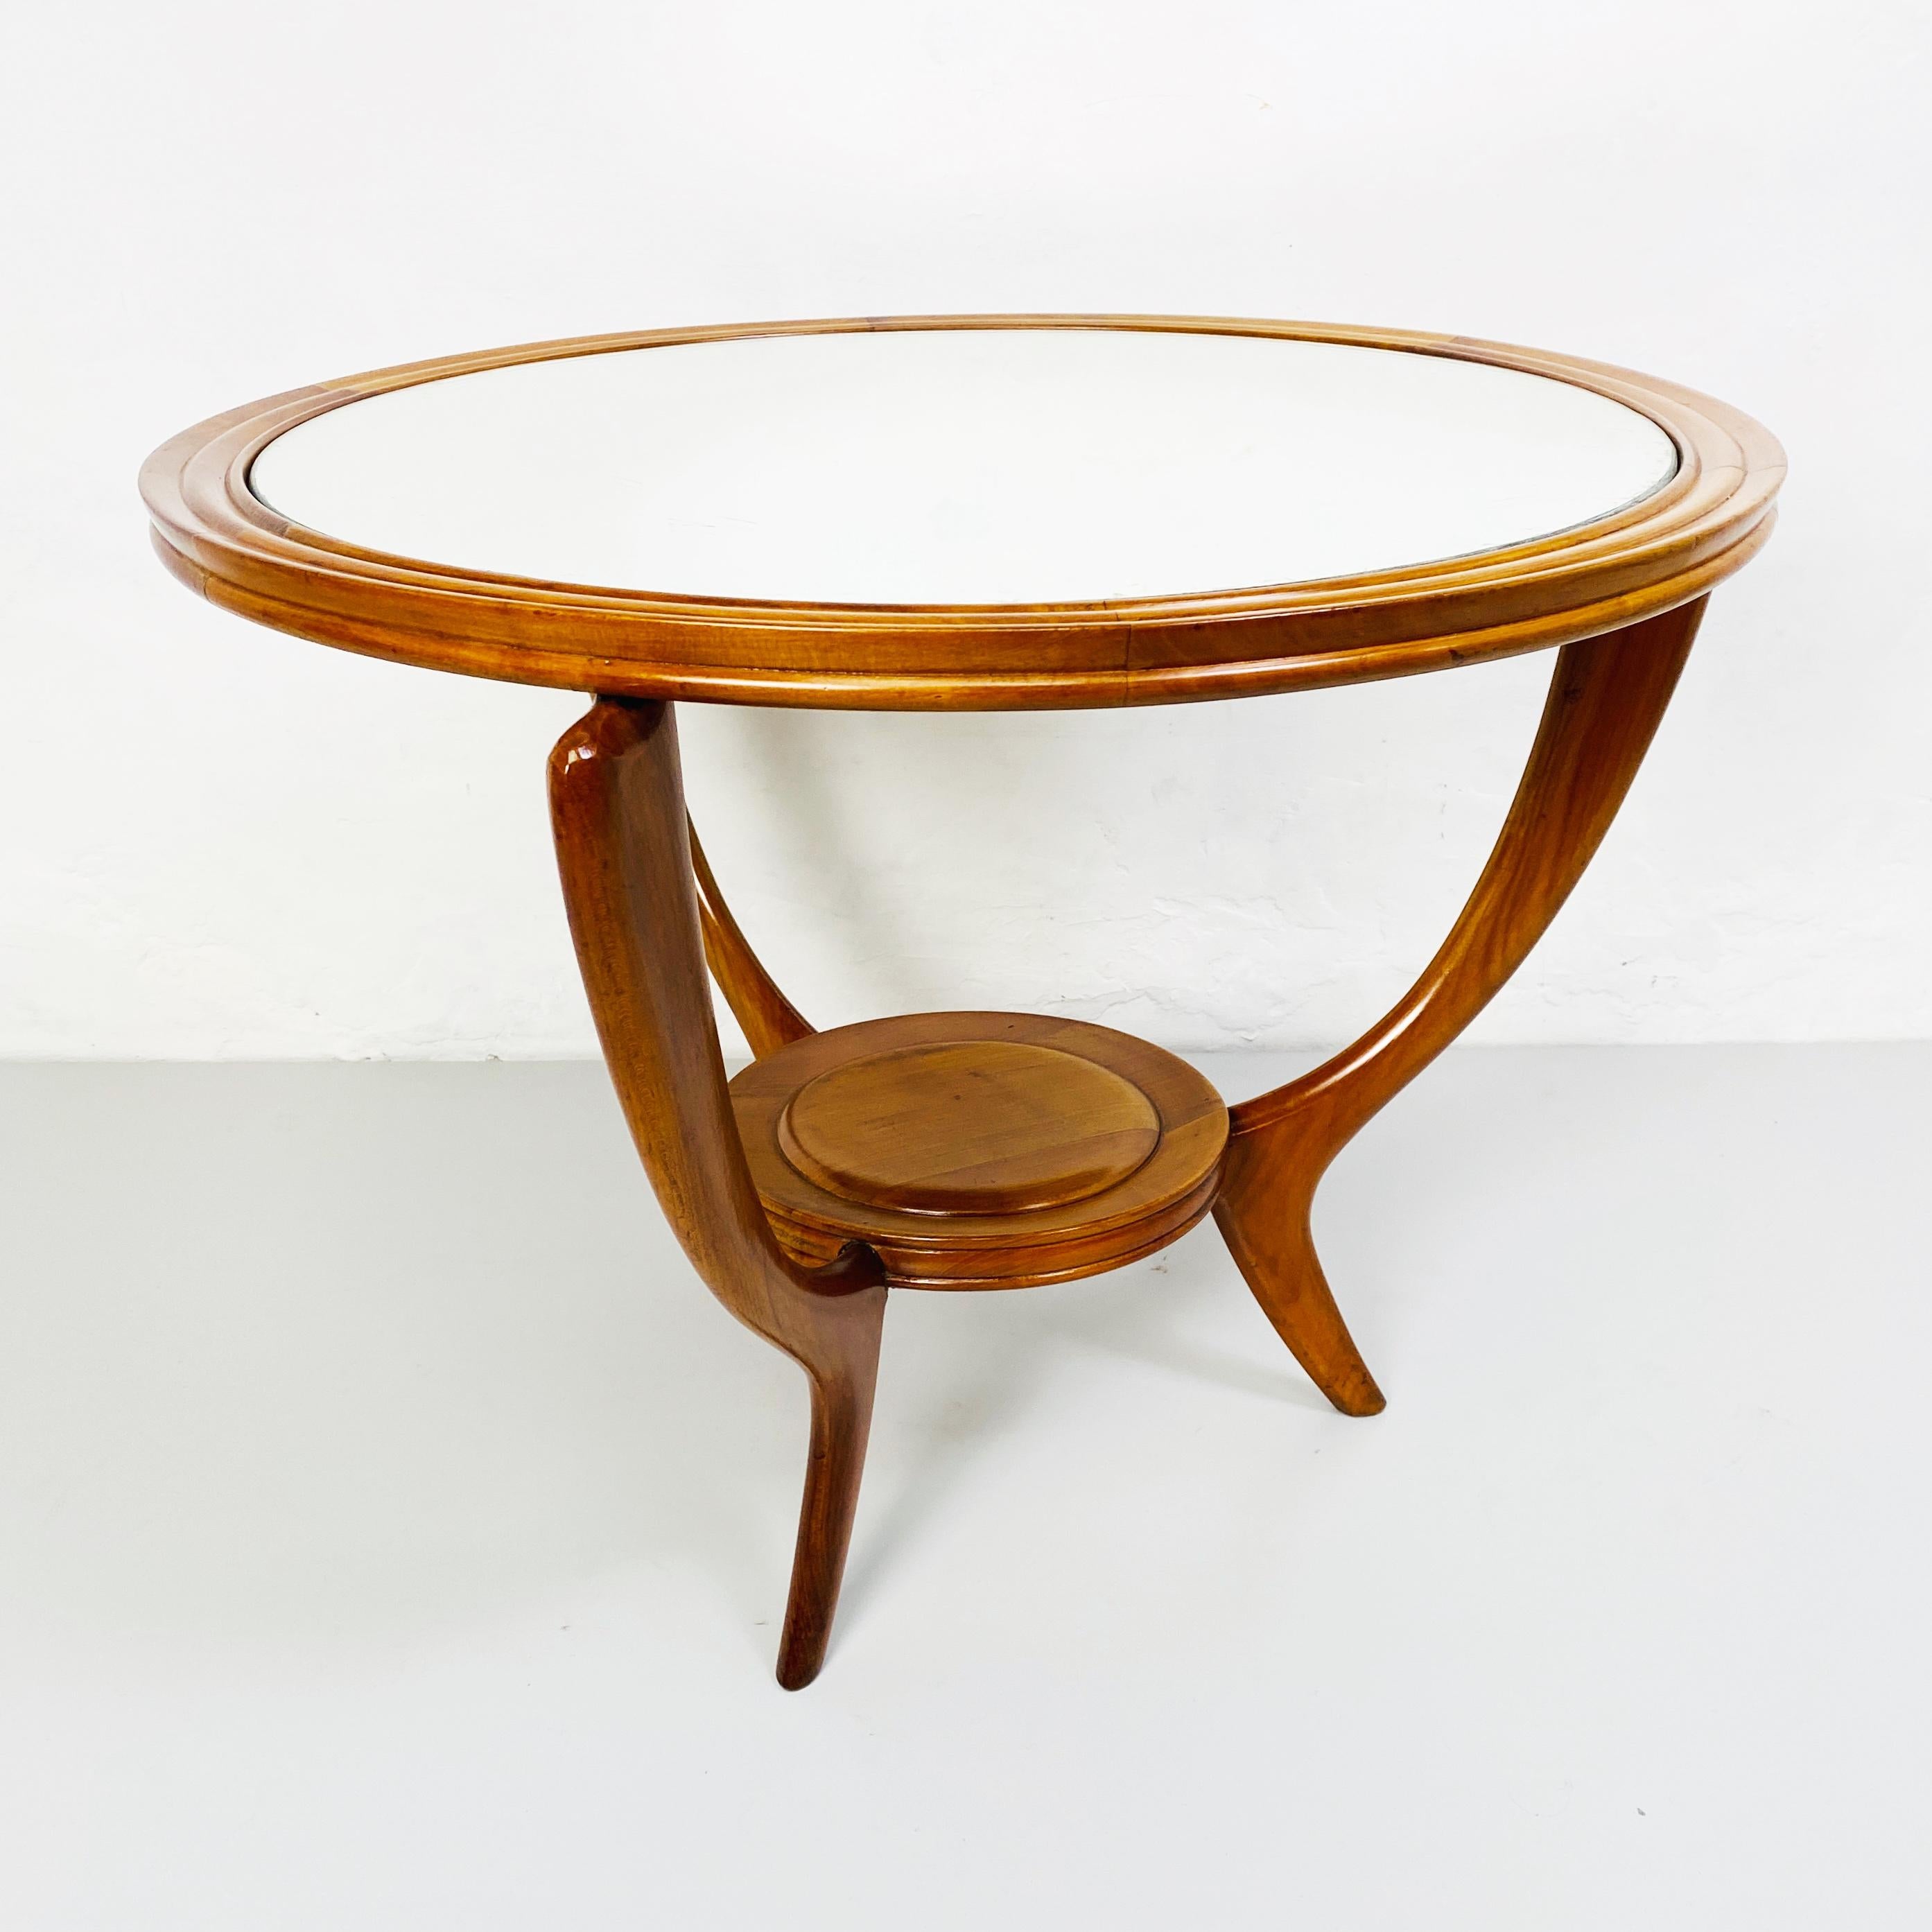 Holztisch mit Spiegel, 1950er Jahre
Schöner und eleganter Tisch in runder Form aus Massivholz mit originalem Spiegel auf der Platte und geschwungenen Beinen.

Dies ist ein fantastisches Stück kann als Couchtisch oder Beistelltisch neben einem